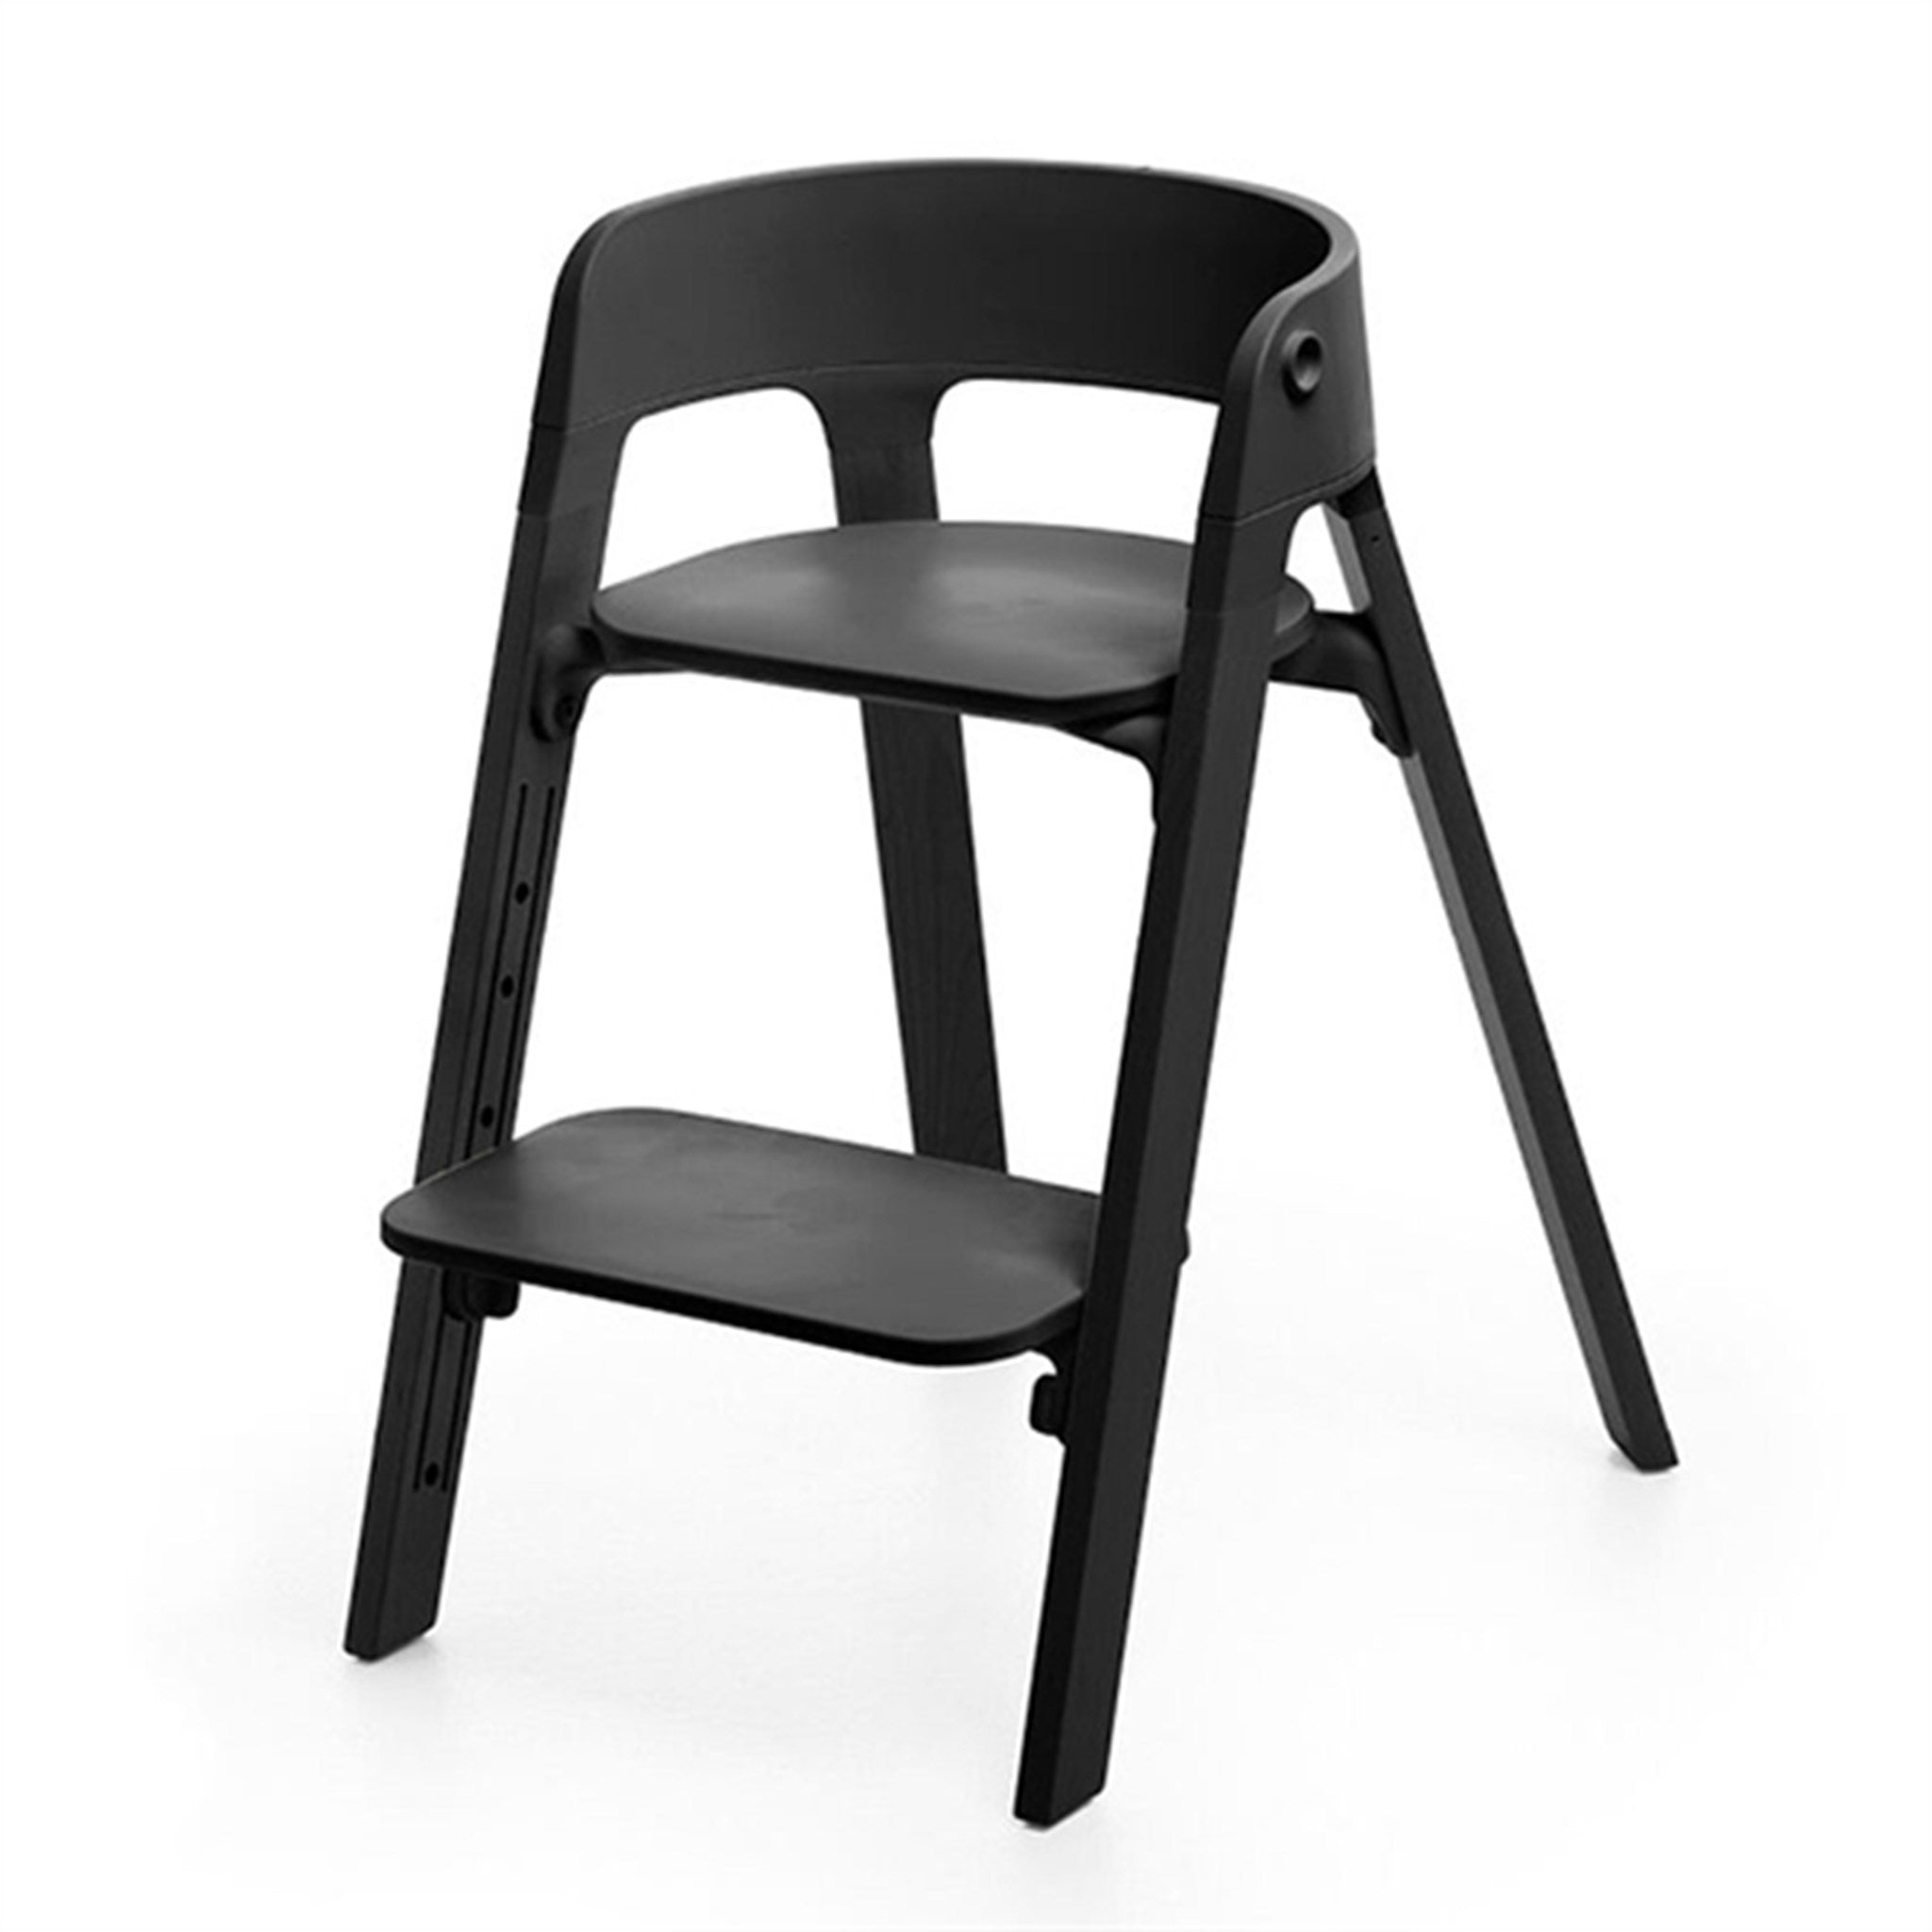 StokkeÂ® Stepsâ¢ Chair Black